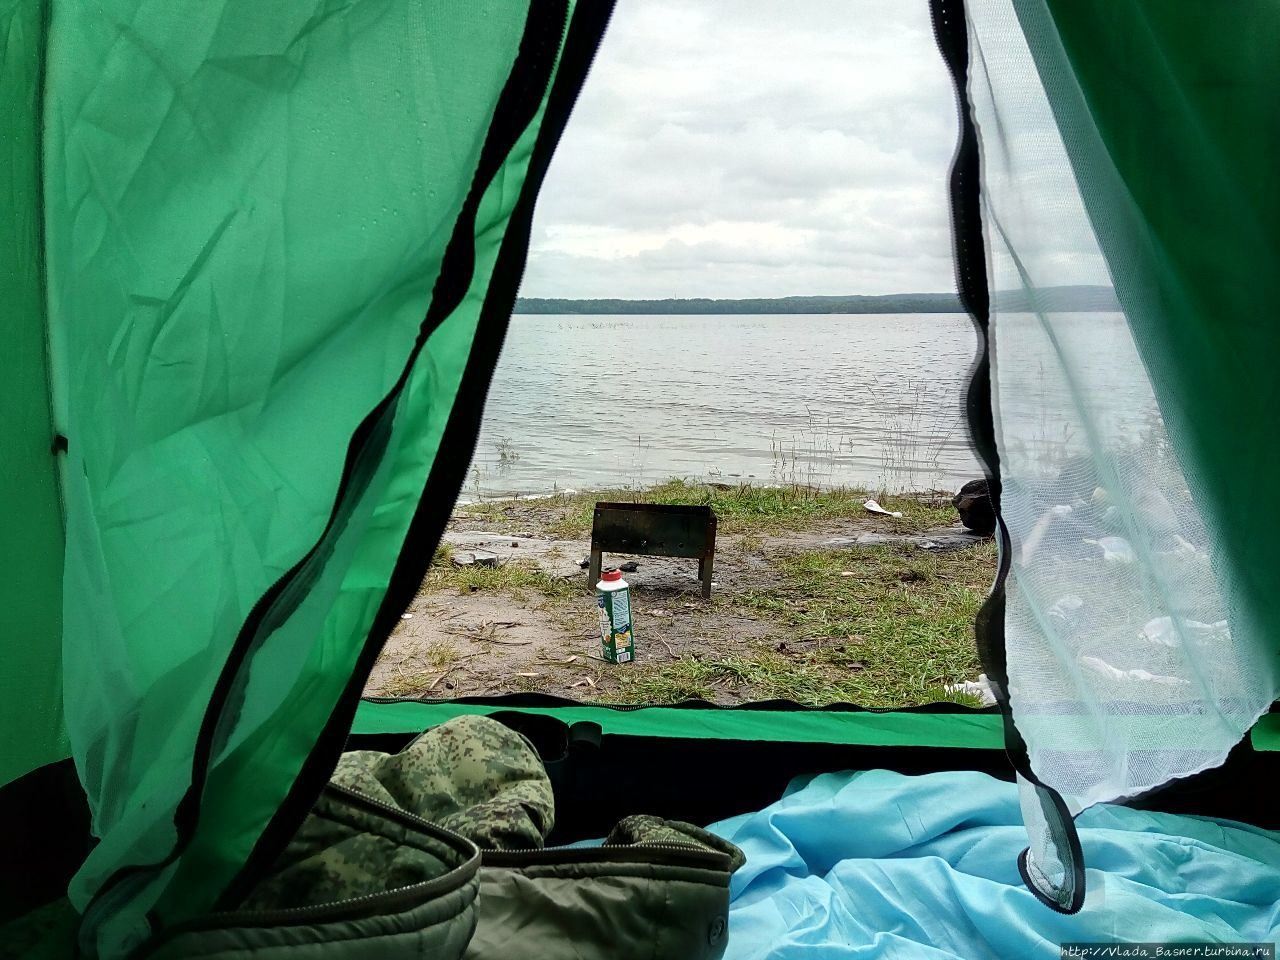 Лагерь на берегу озера. Торбеево озеро палаточный лагерь. Шатер на озере Силантьевское. Белё озеро палаточный городок. Палатка на природе.